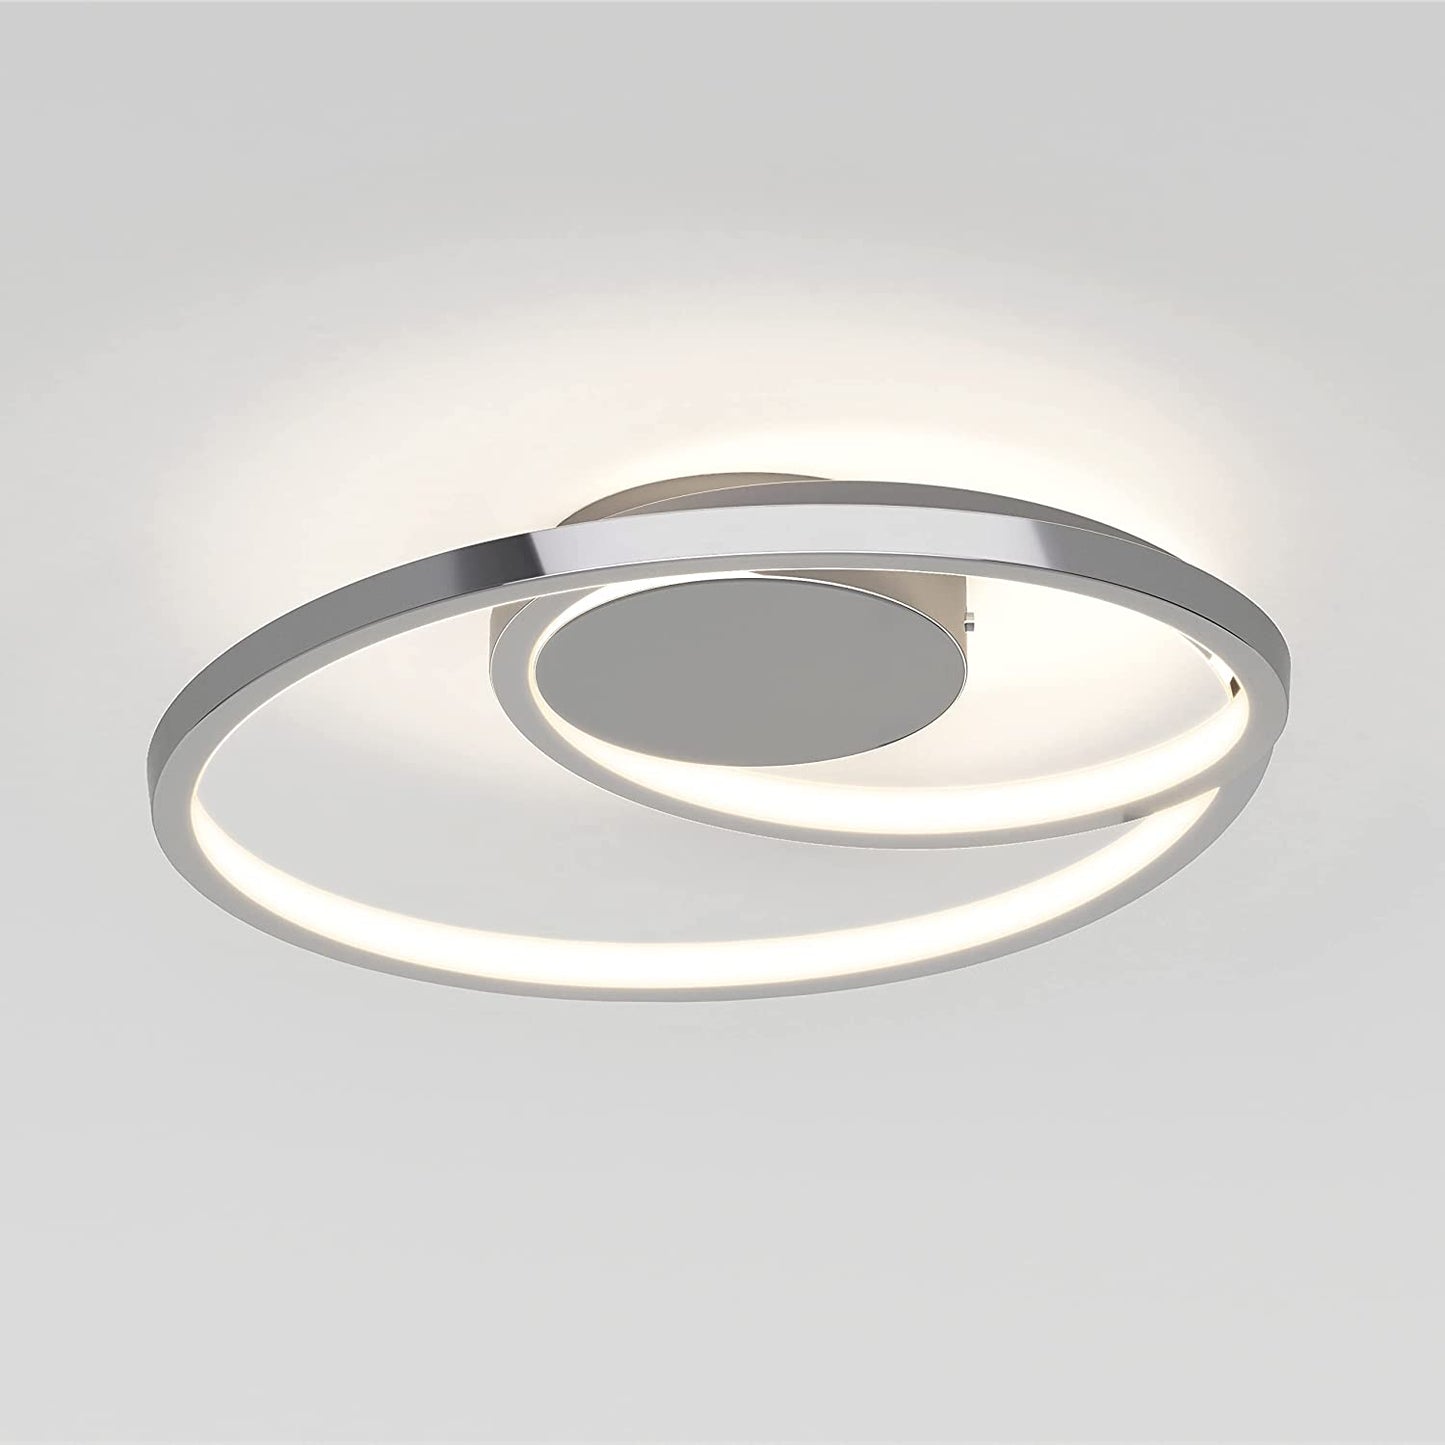 Artika Salto LED-Integrated Flushmount Ceiling Light Fixture, Chrome FM-SA-CR